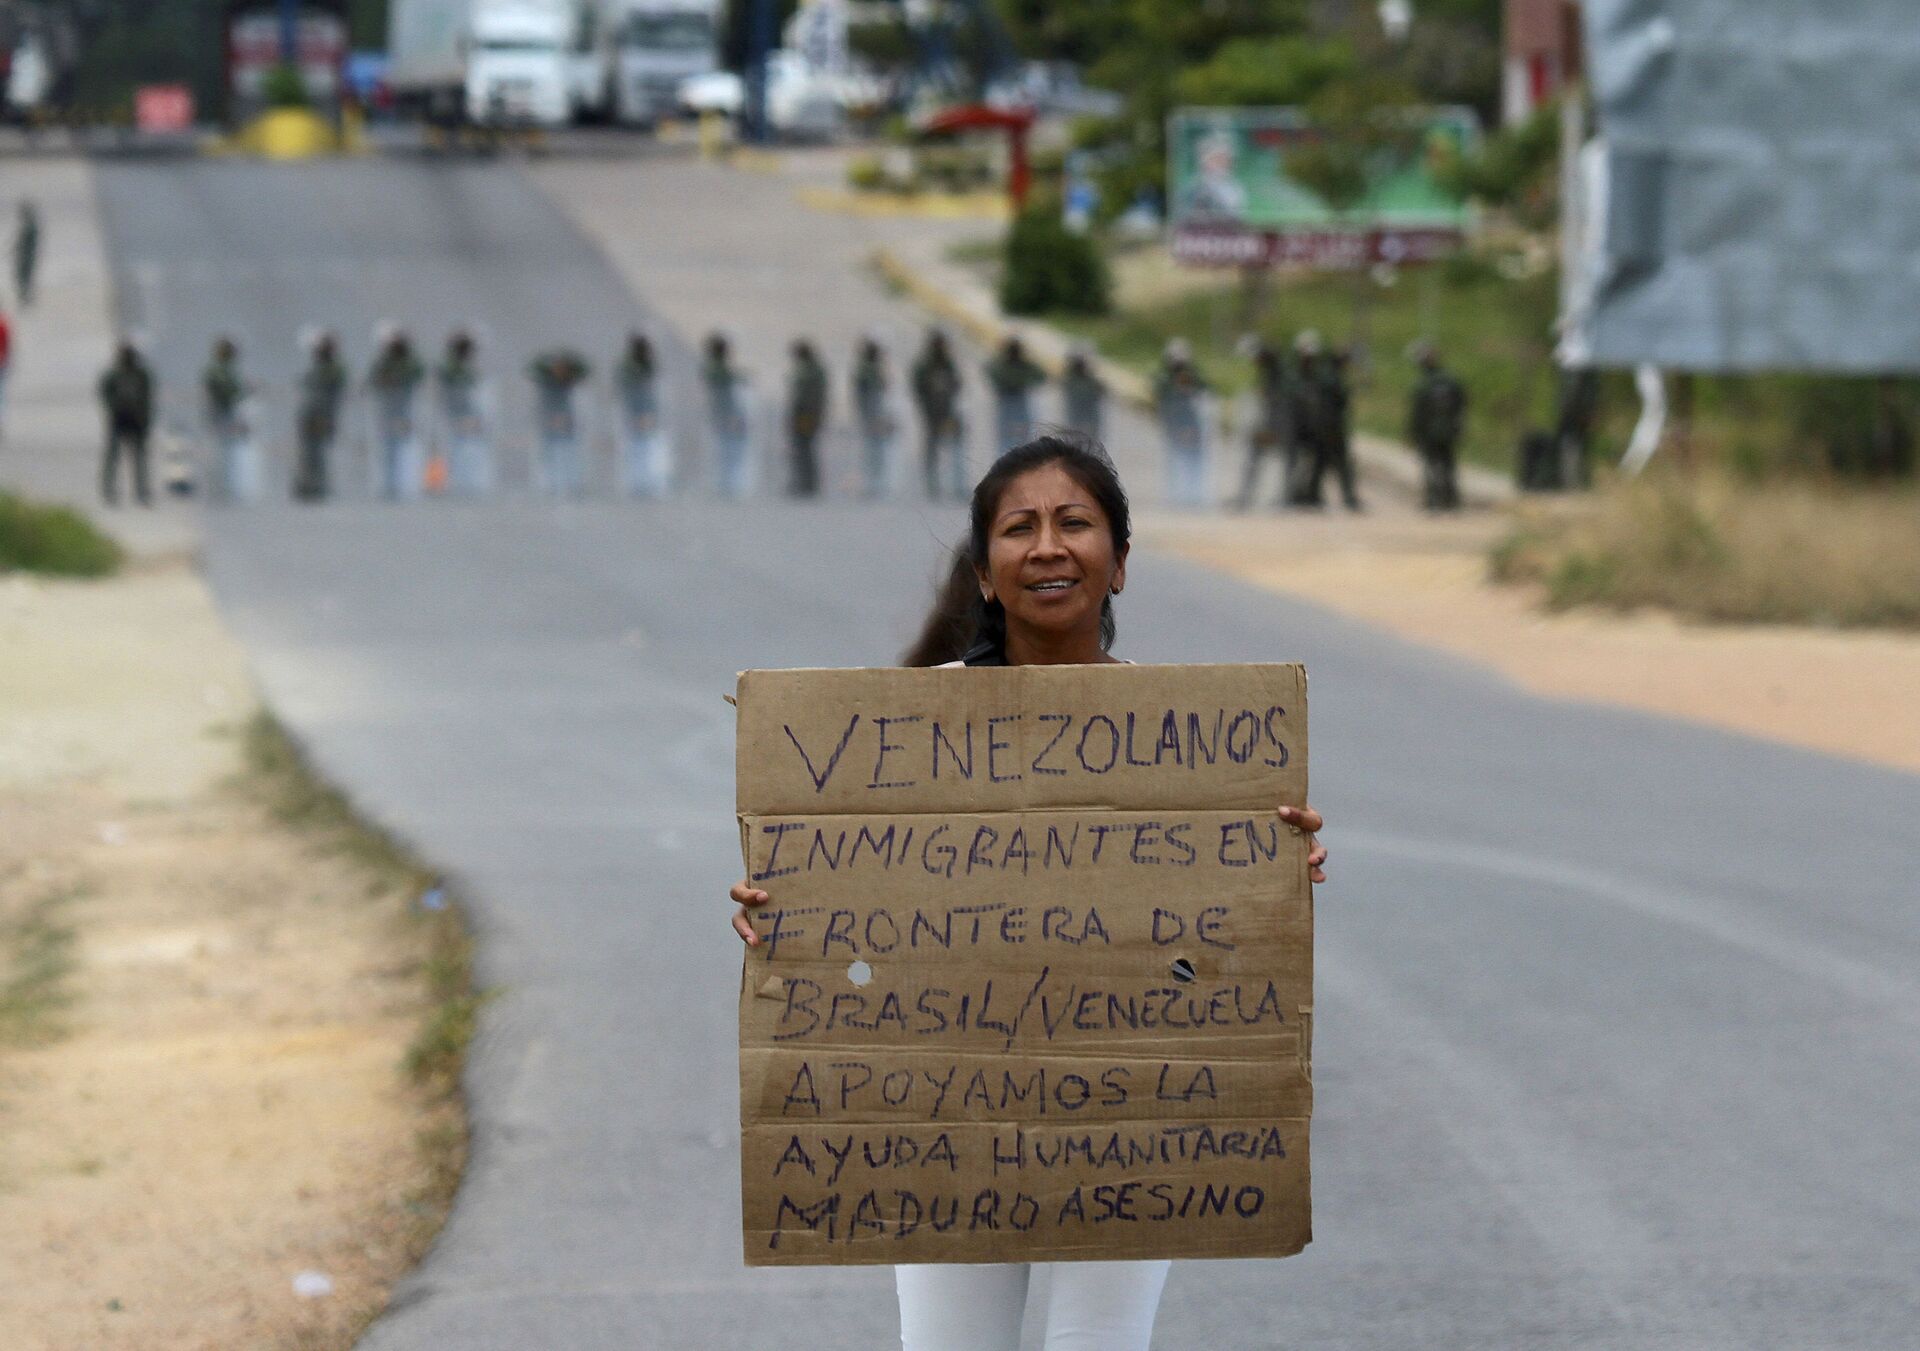 Venezuelana segura uma placa que diz em espanhol Migrantes venezuelanos na fronteira Brasil-Venezuela, apoiamos a ajuda humanitária. Maduro assassino enquanto aguarda a abertura da fronteira em Pacaraima, em Roraima, Brasil (foto de arquivo) - Sputnik Brasil, 1920, 28.12.2021